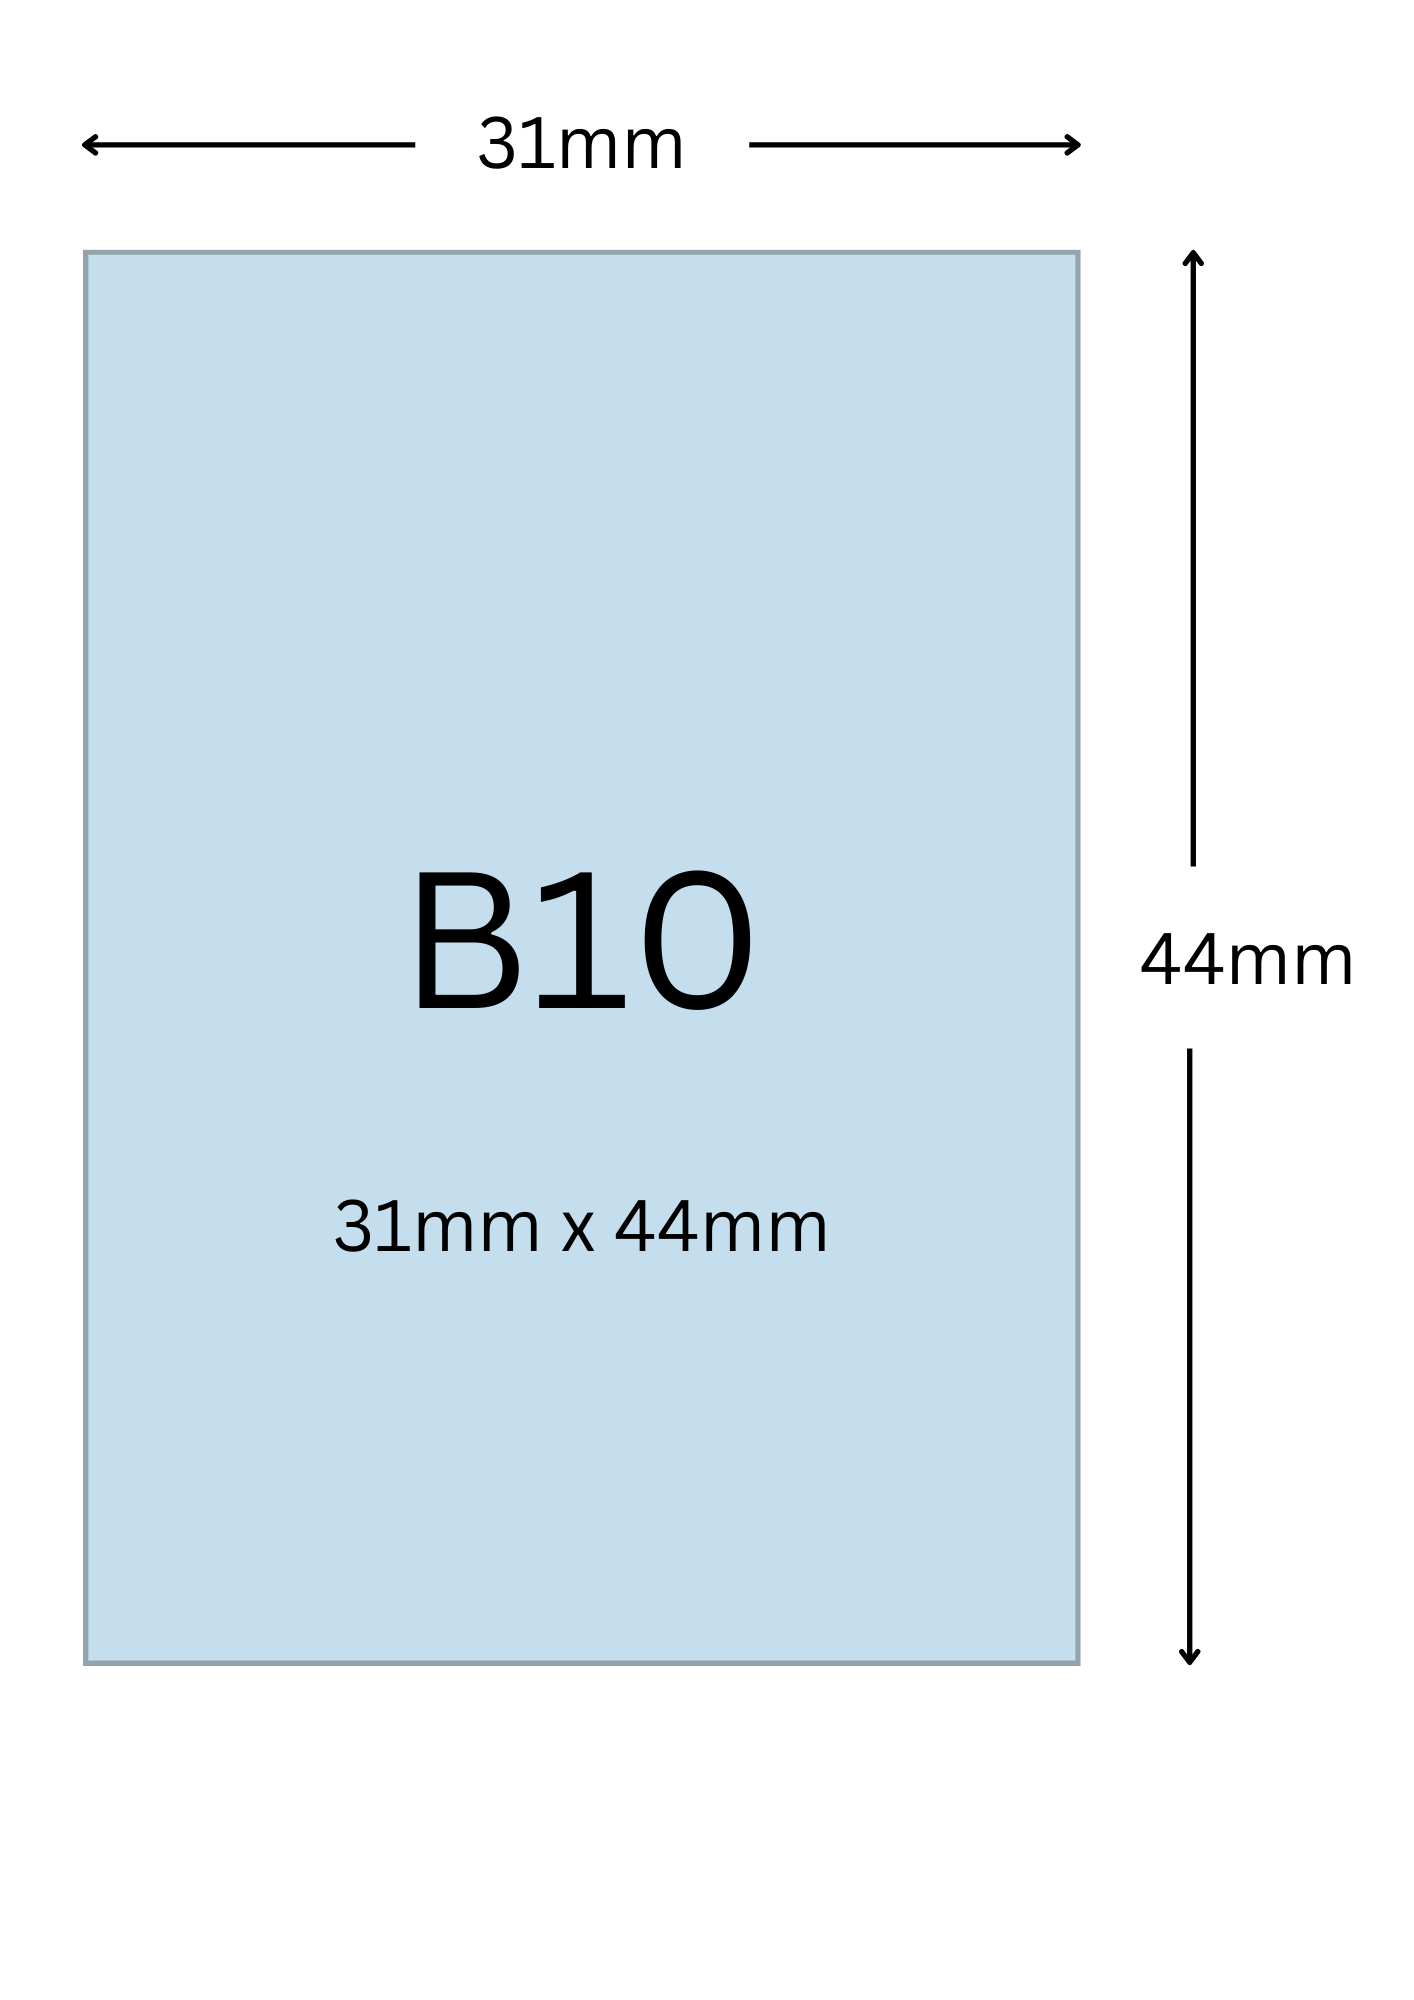 B10尺寸公分, B10紙張尺寸大小, B10紙張對應開數是幾開